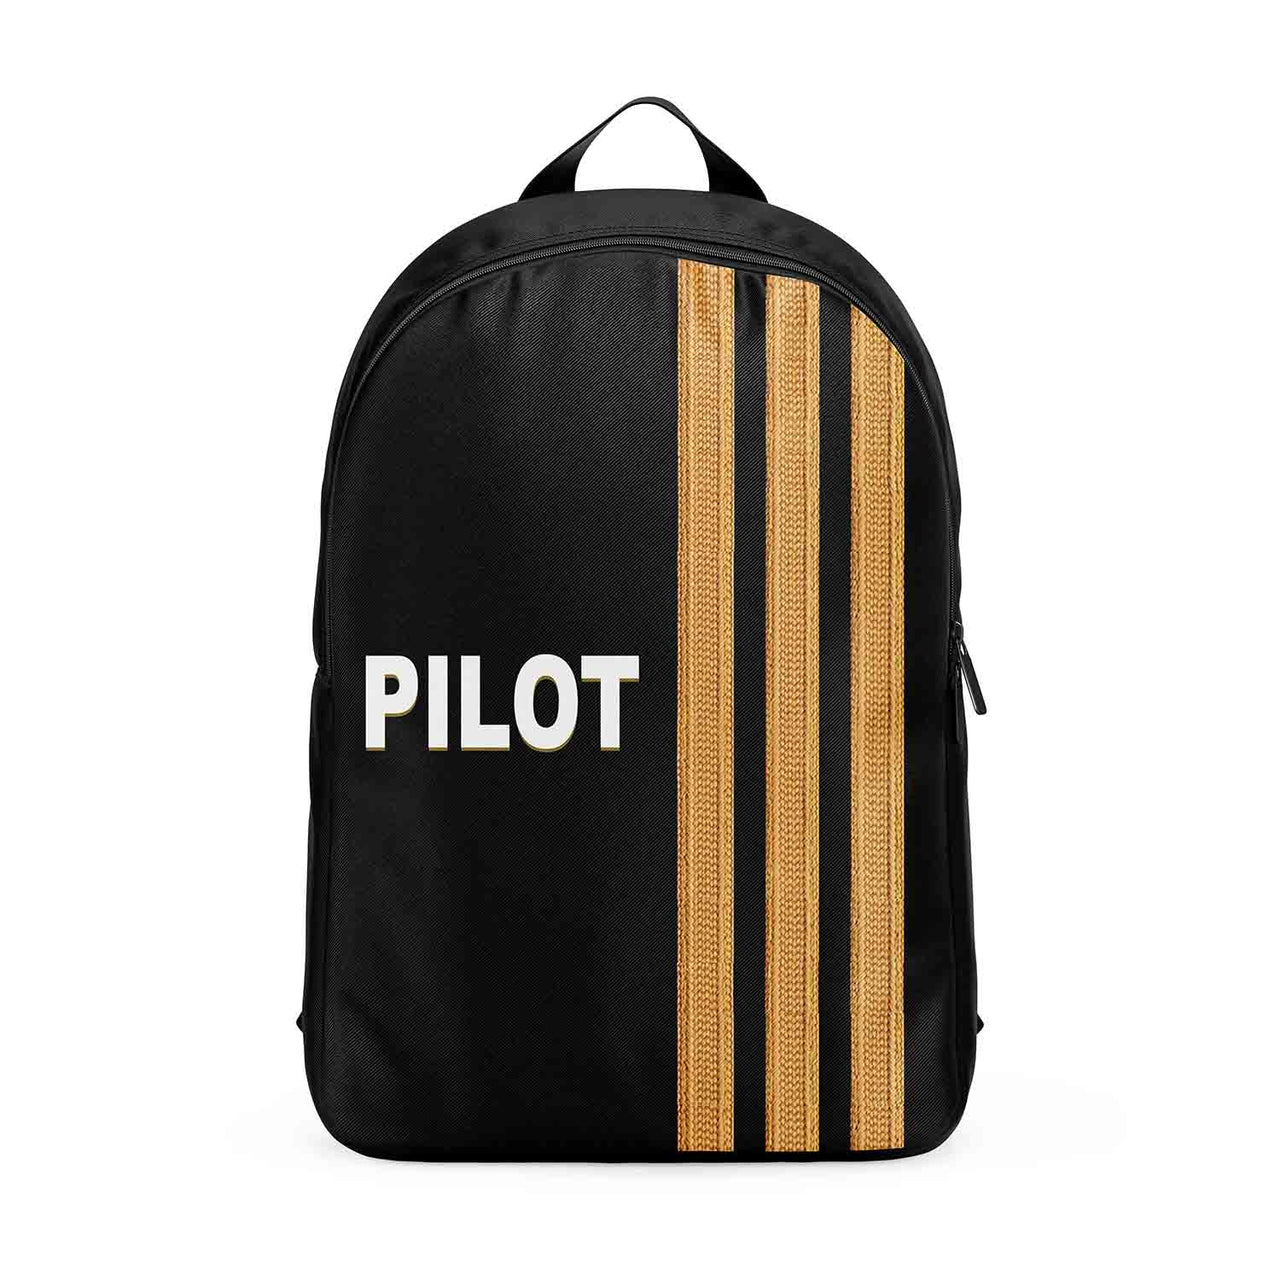 PILOT & Epaulettes 3 Lines Designed Backpacks